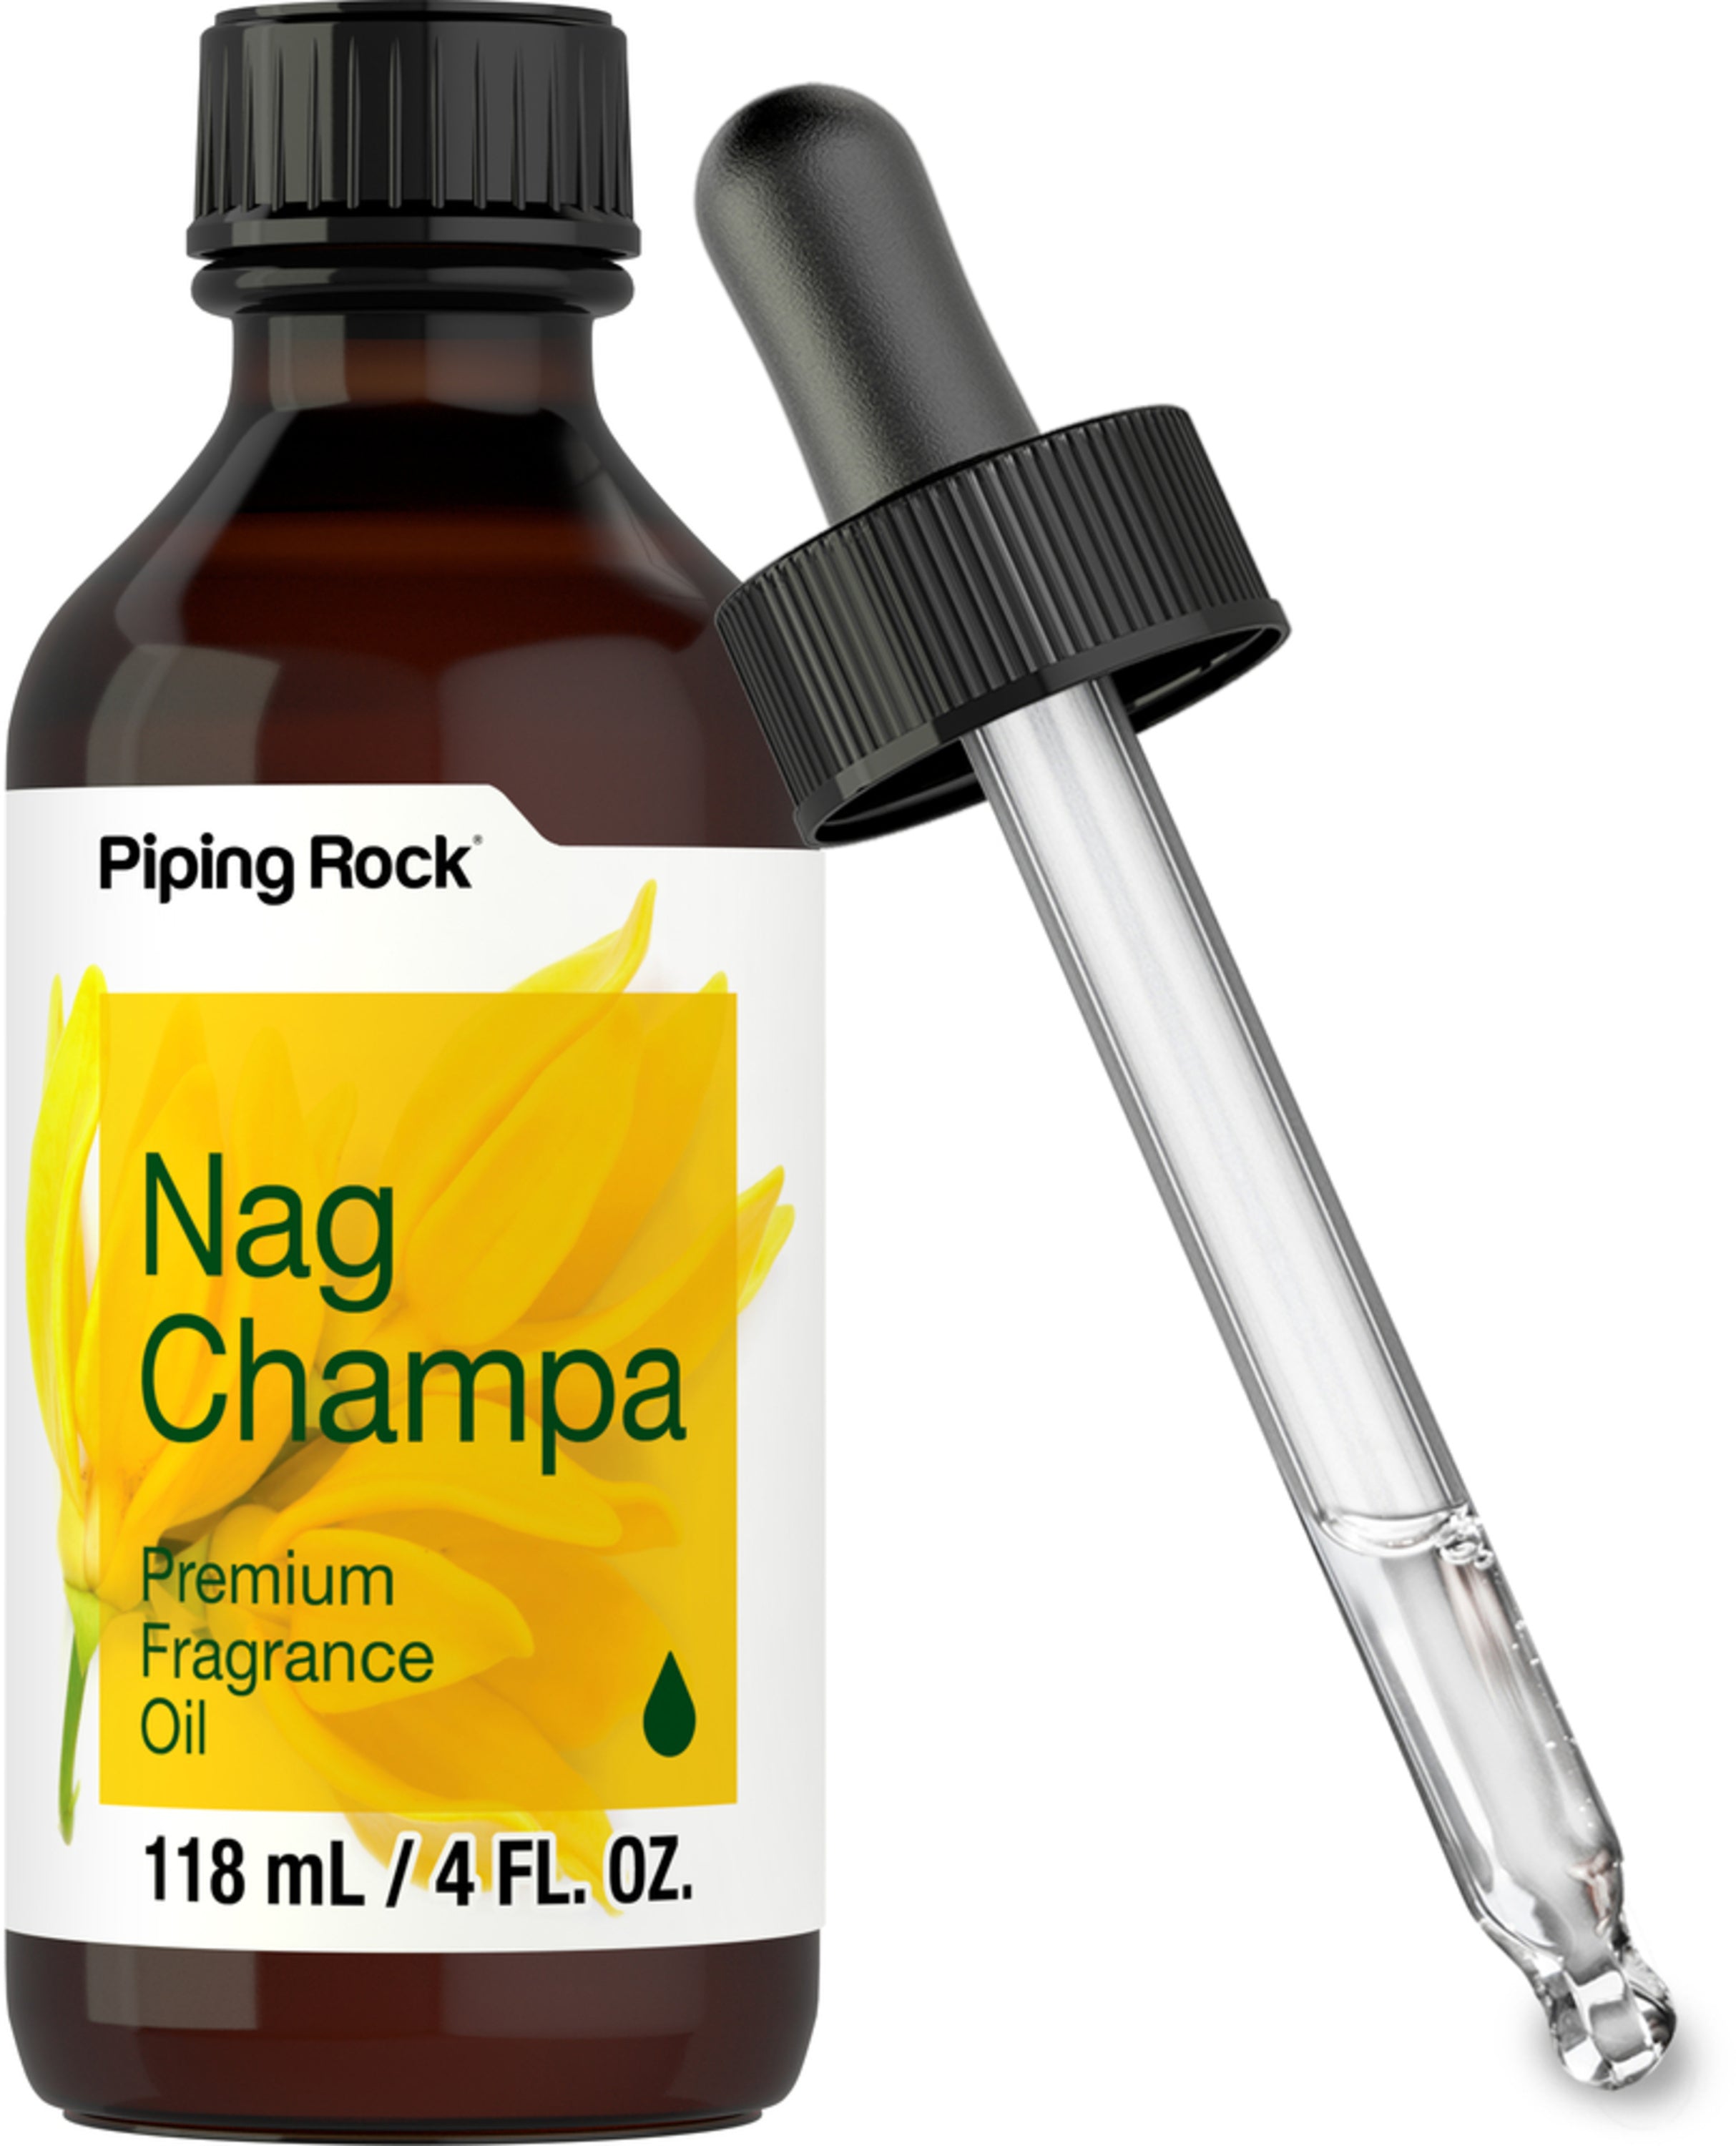 Comprar Nag Champa precio opiniones